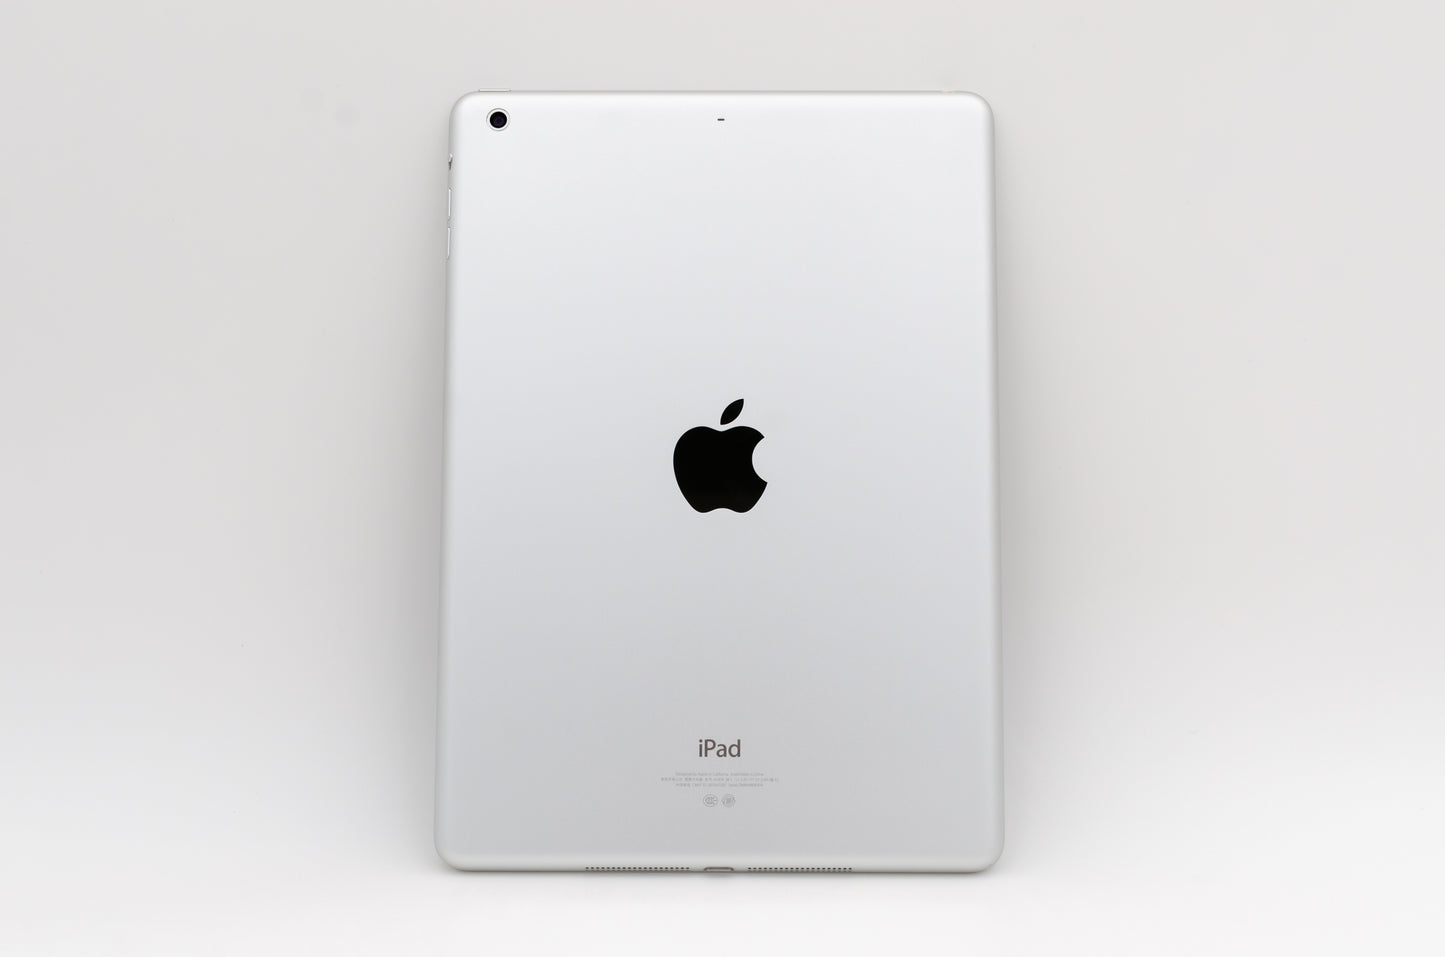 apple-2013-9.7-inch-ipad-air-1-a1474-silver/white-2